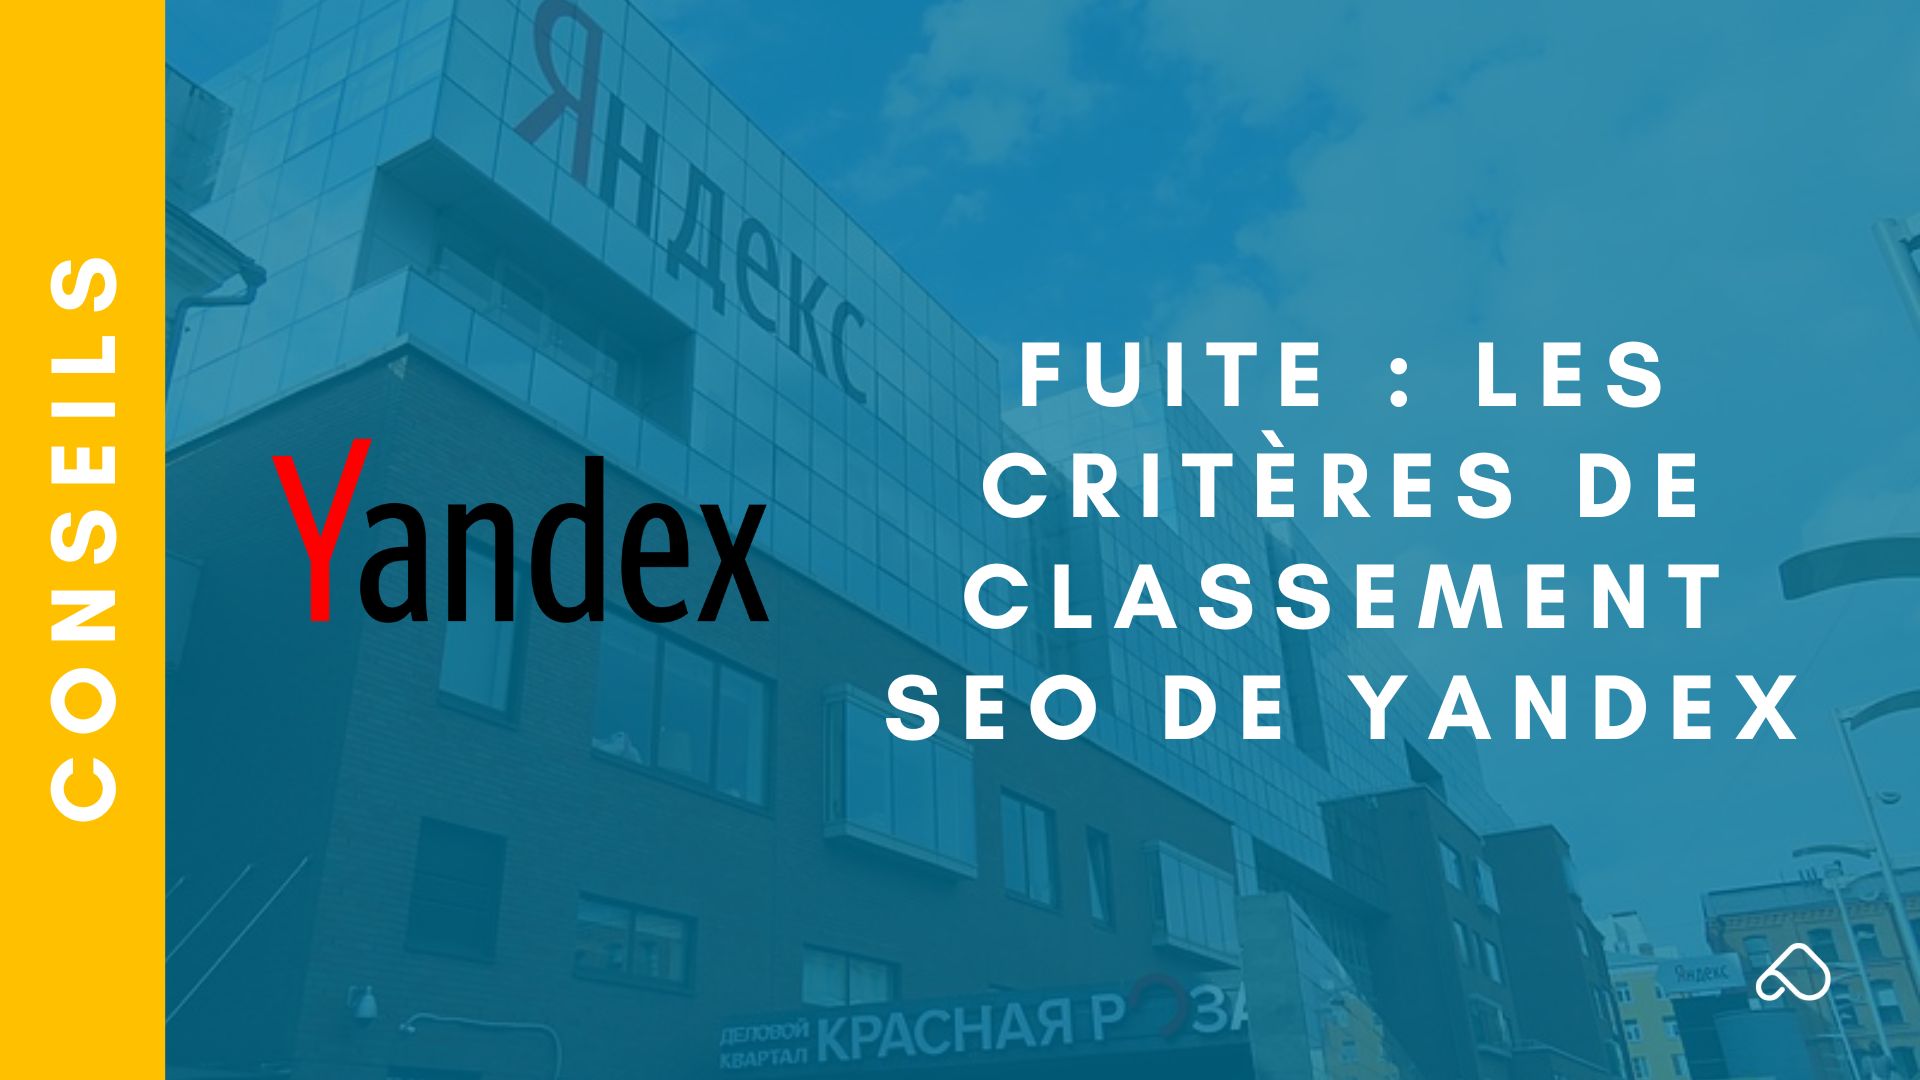 Fuite des critères SEO de Yandex